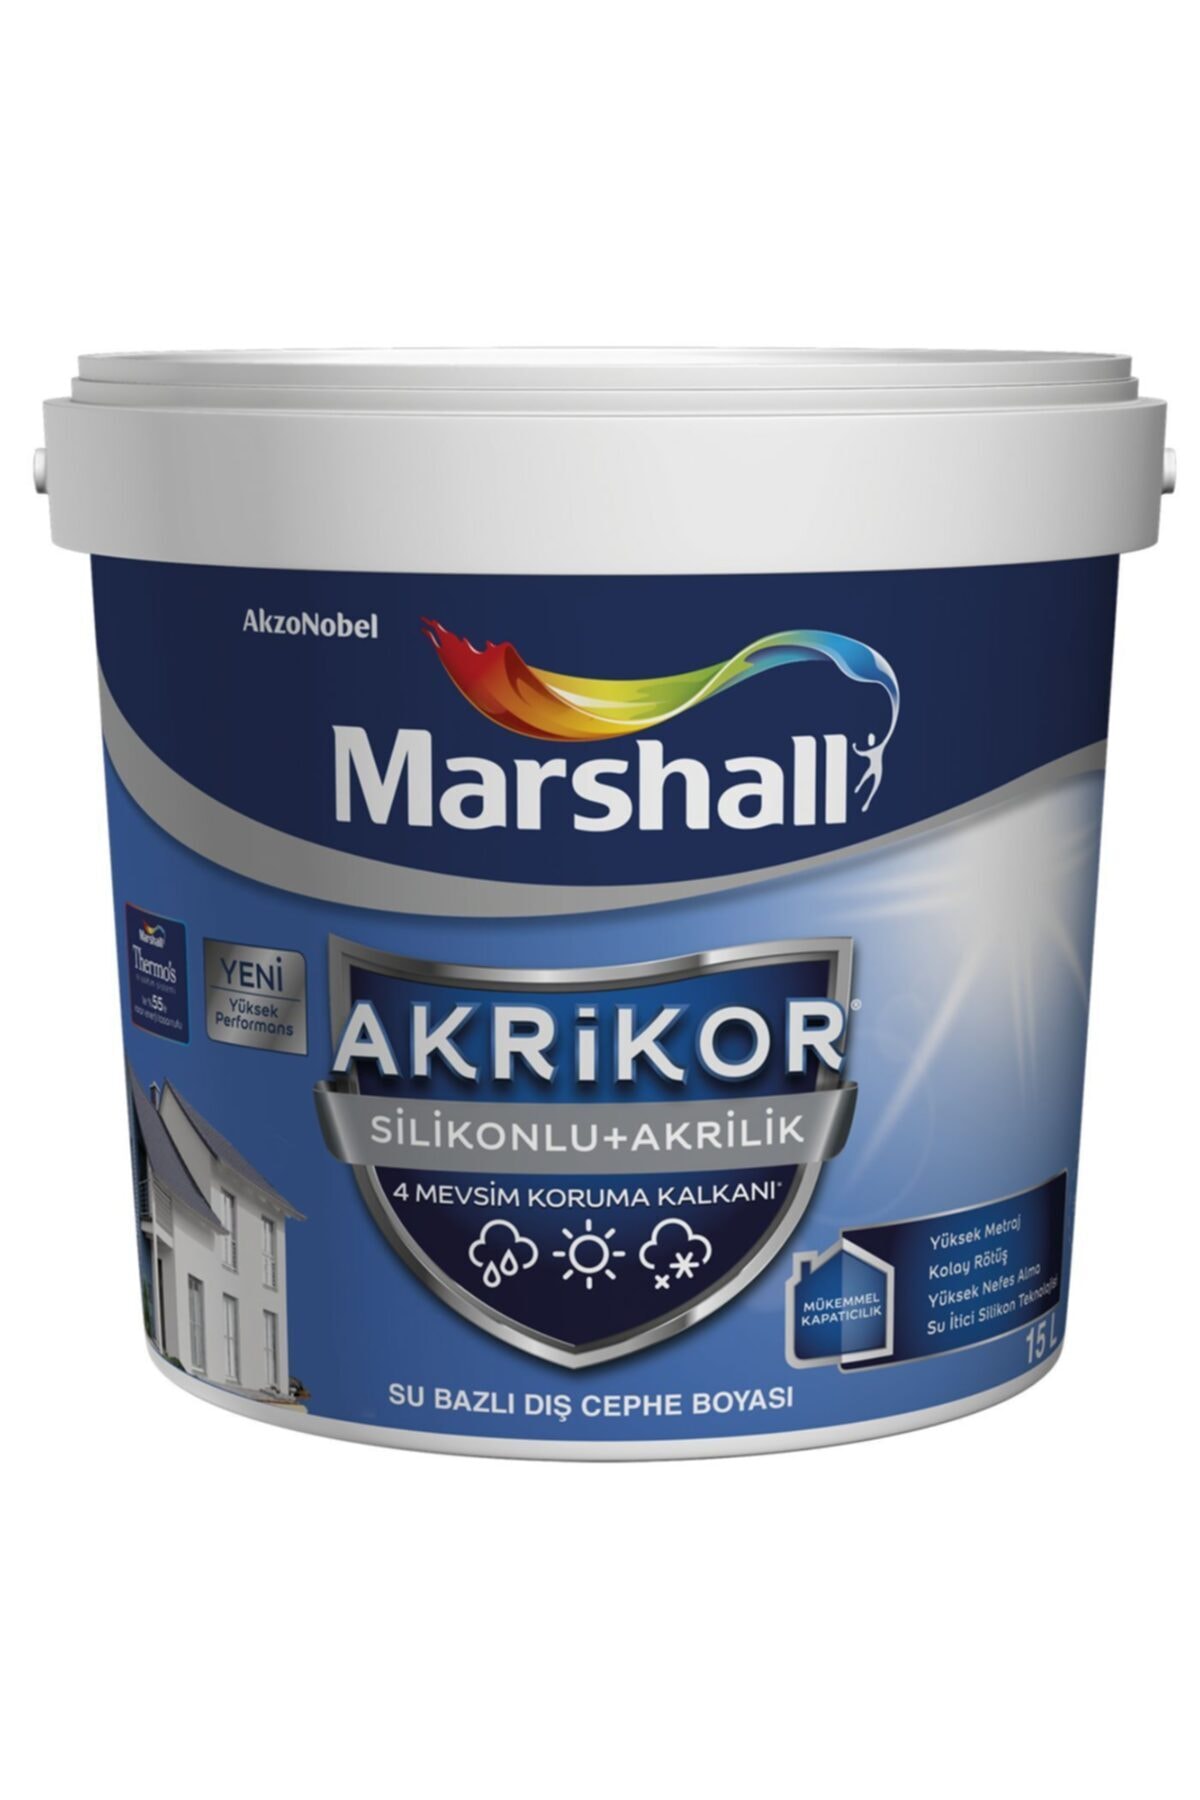 Marshall Akrikor Silikonlu Akrilik Dış Cephe Boyası 2.5lt/3.5kg-tüm Renkler 4 Mevsim Koruma Sağlar